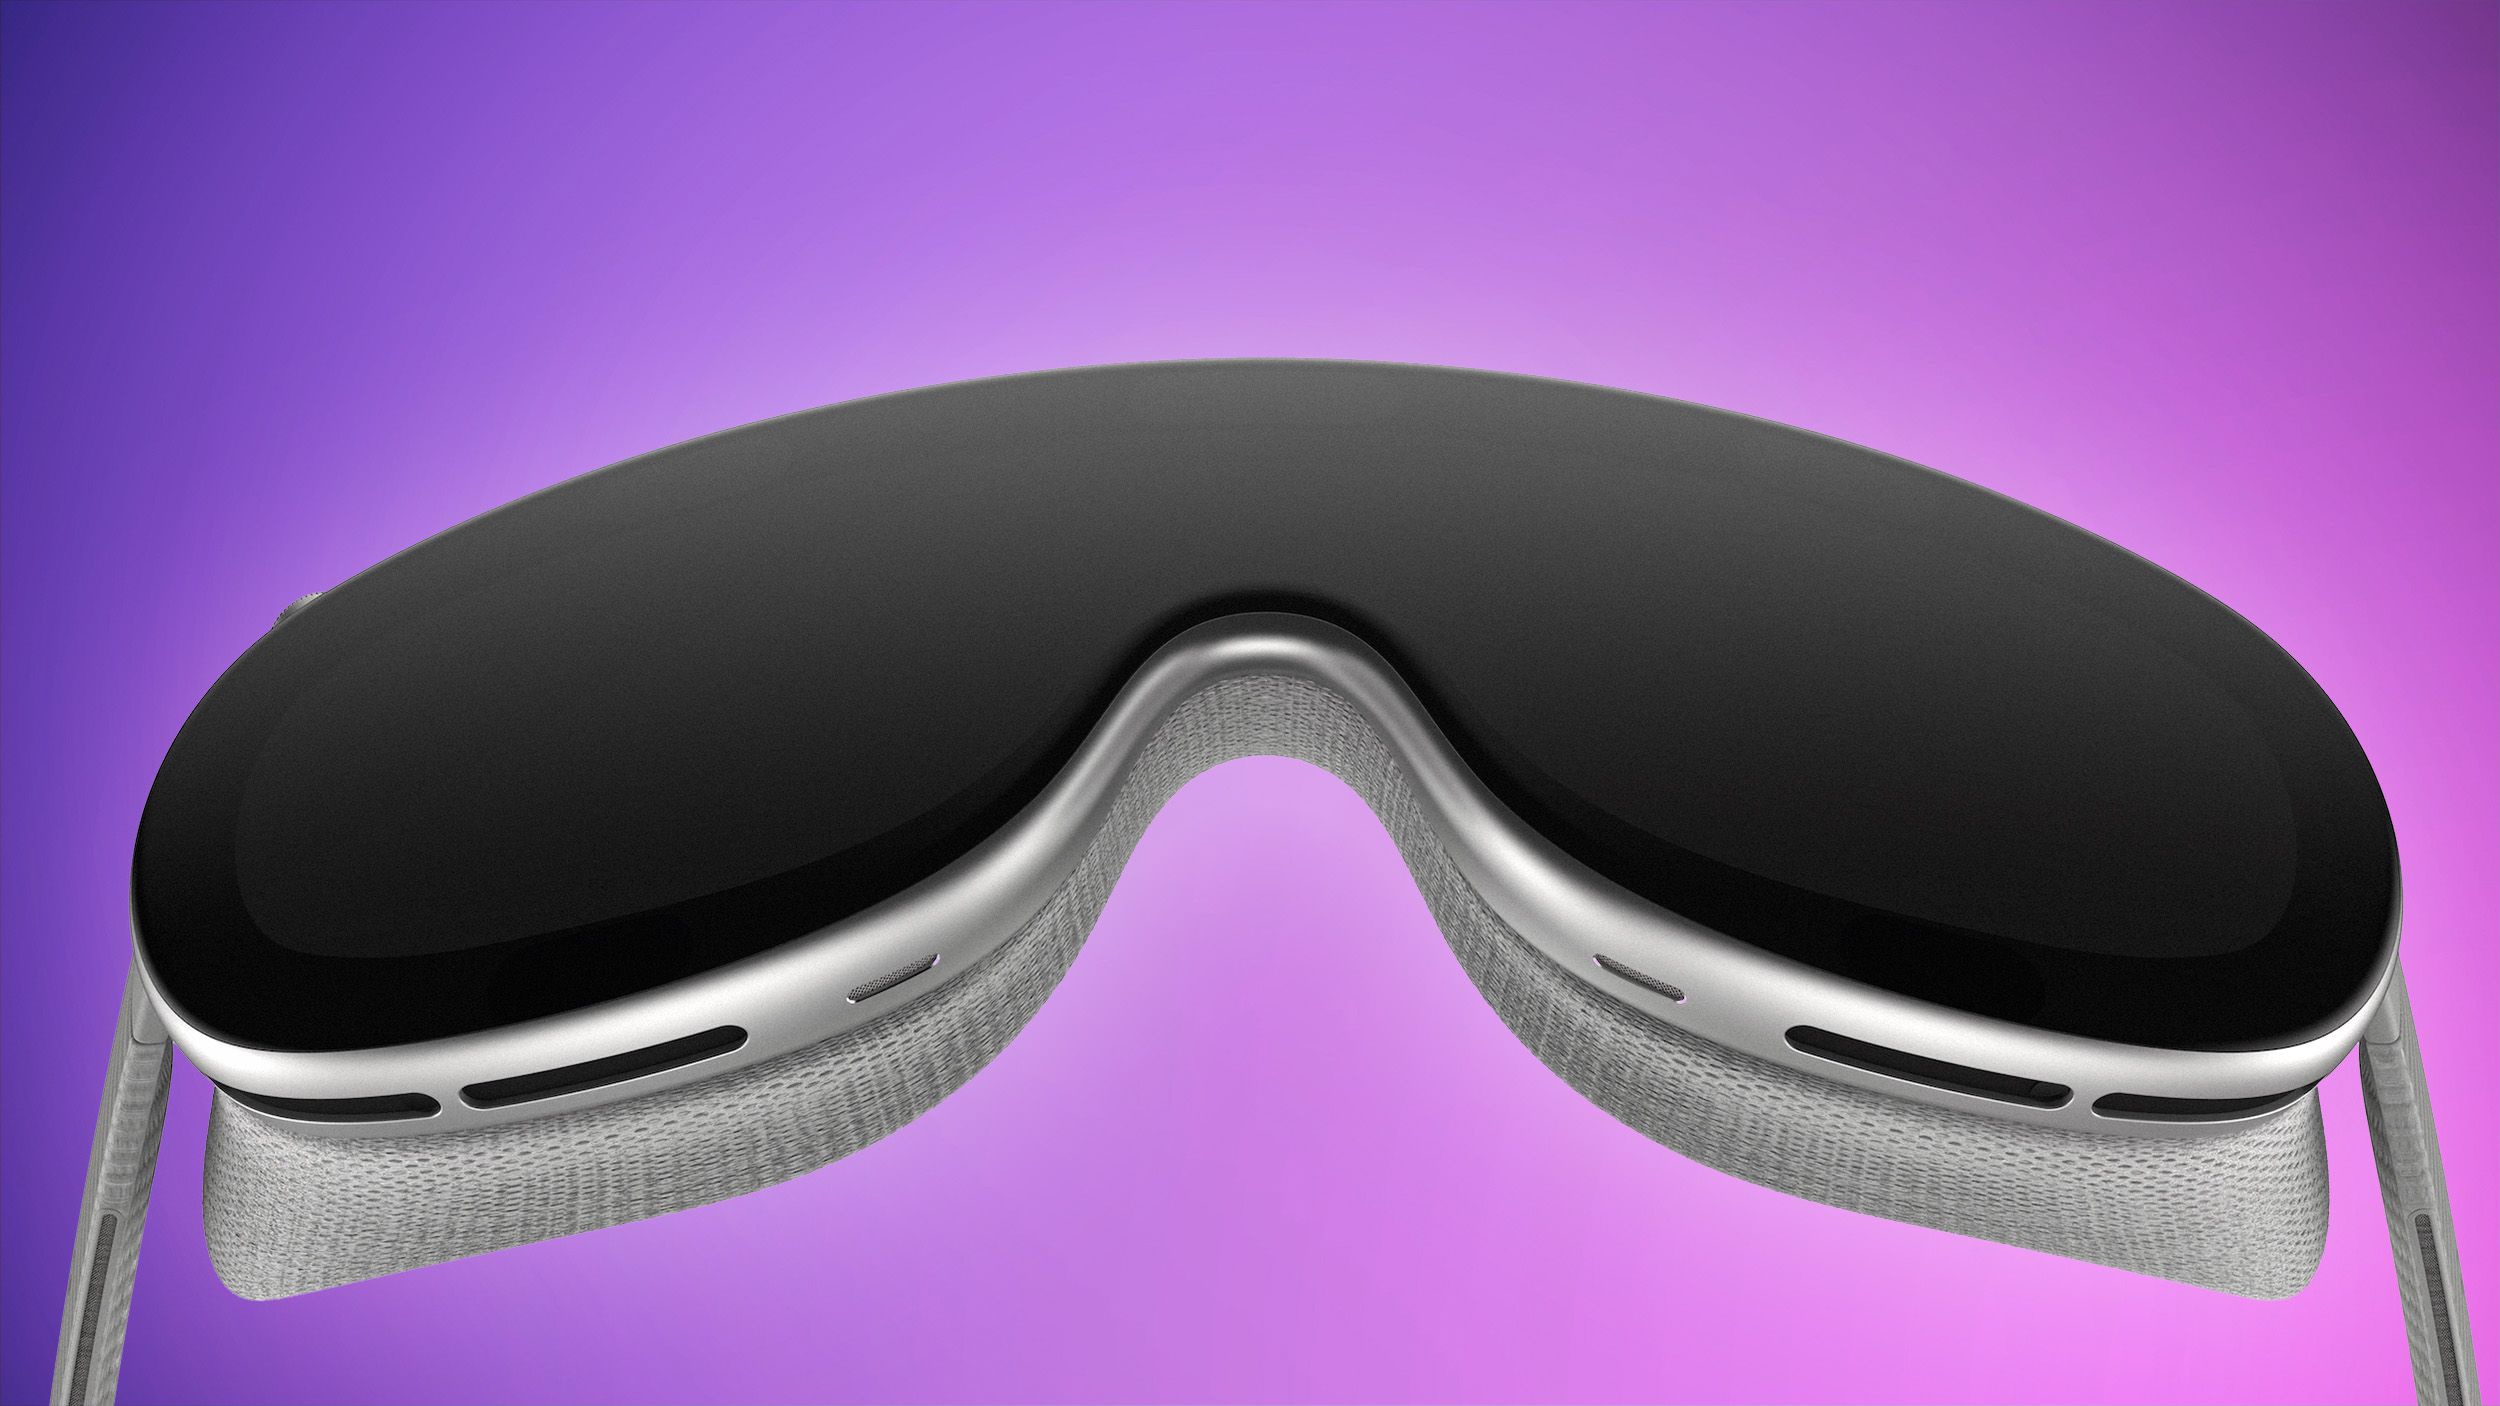 Se espera que los auriculares AR/VR de Apple entren en producción en masa en octubre antes del lanzamiento a fines de 2023